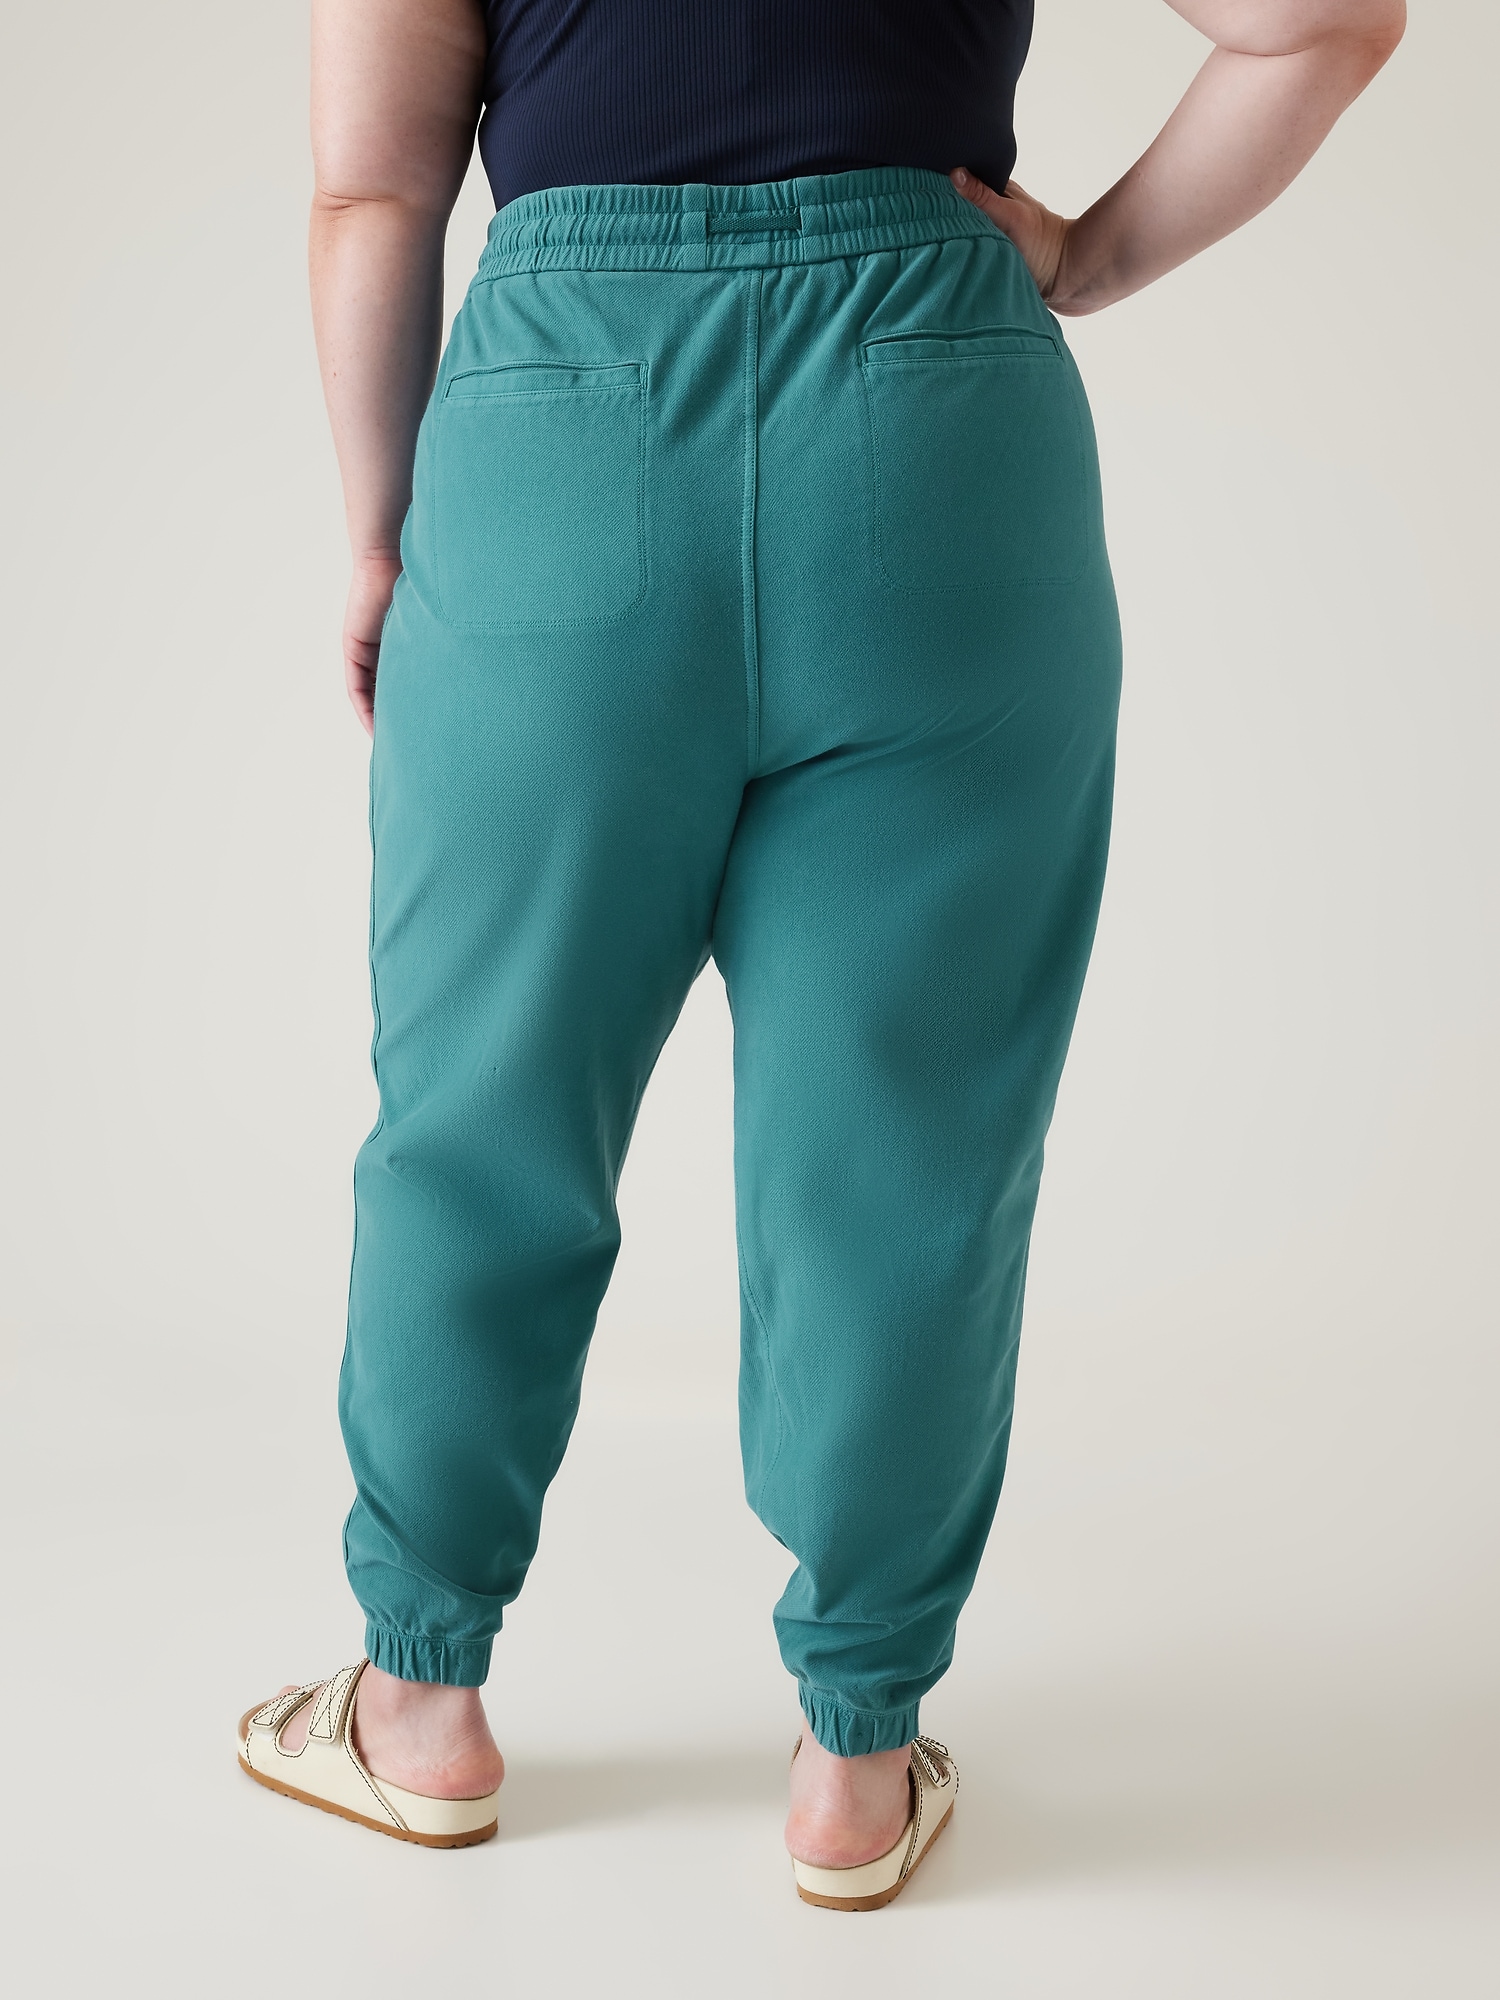 ATHLETA Farallon Jogger Pants Tie Dye Bluish Green Women's Size XS